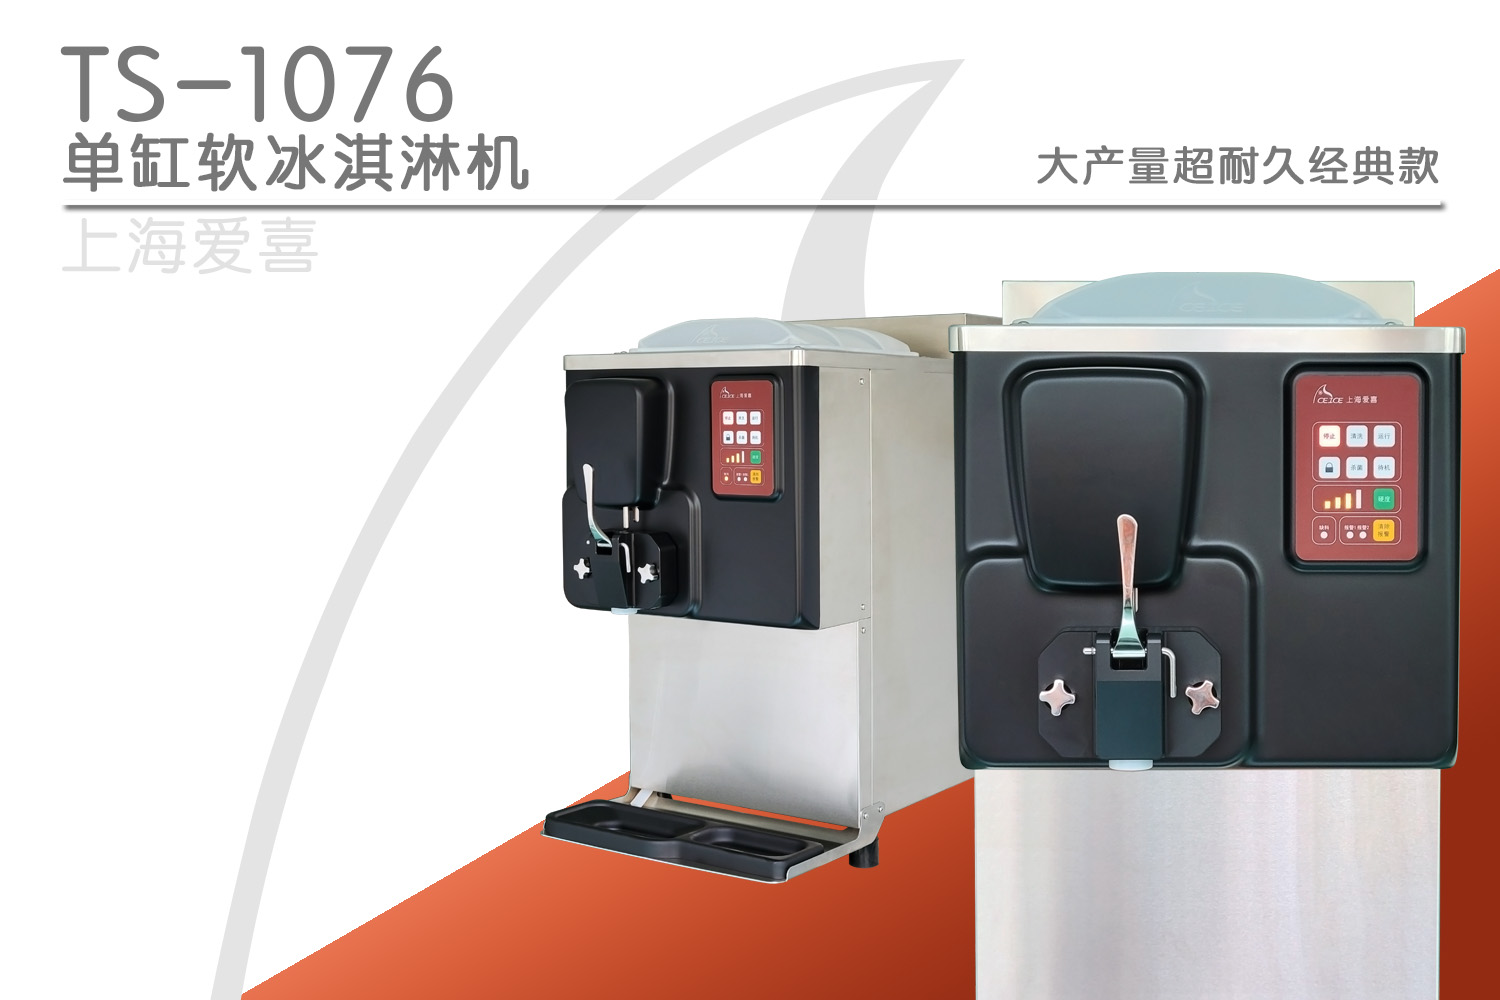 Bravo 2合1硬冰淇淋机 - 北京市 - 贸易商 - 硬冰淇淋机 - 意大利冰淇淋机 - 苏州威莱塔贸易有限公司